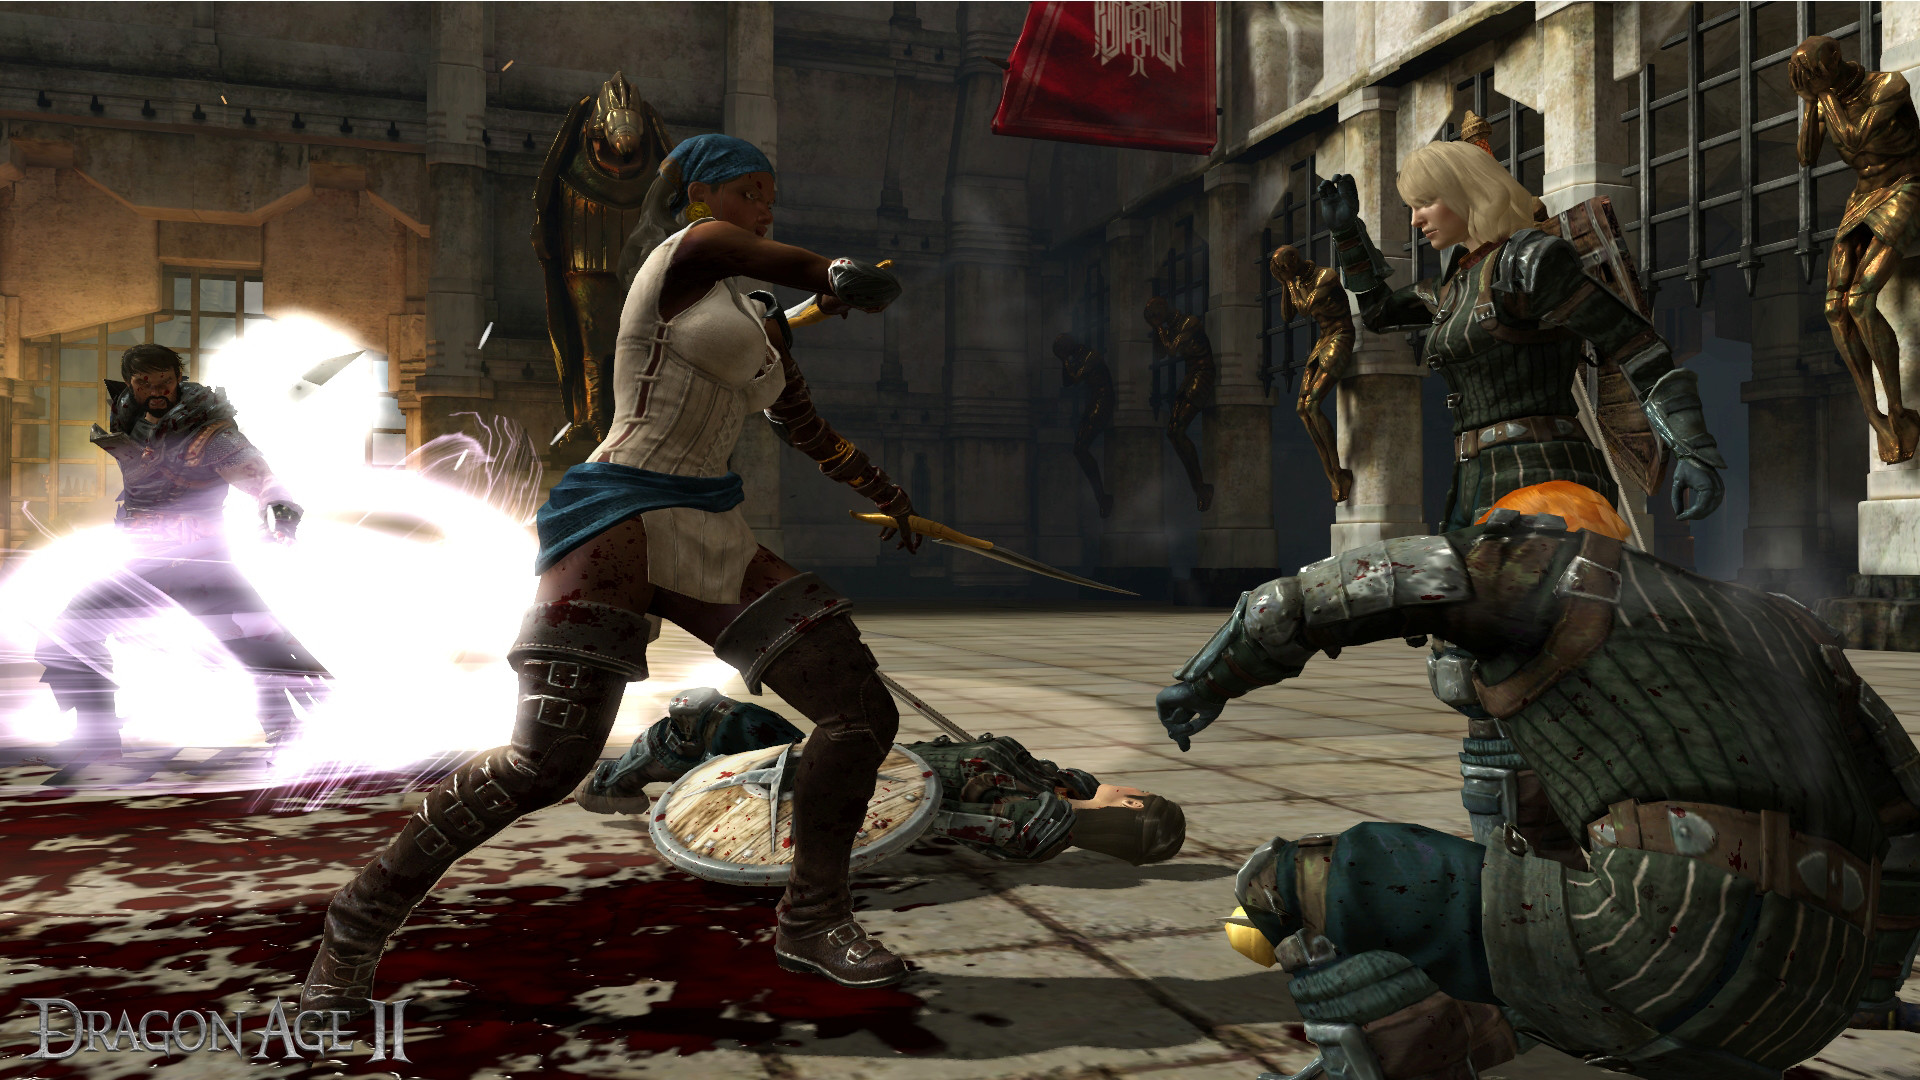 David Gaider cựu cây viết của BioWare chia sẽ về ý tưởng 'Synder cut' của Dragon Age 2